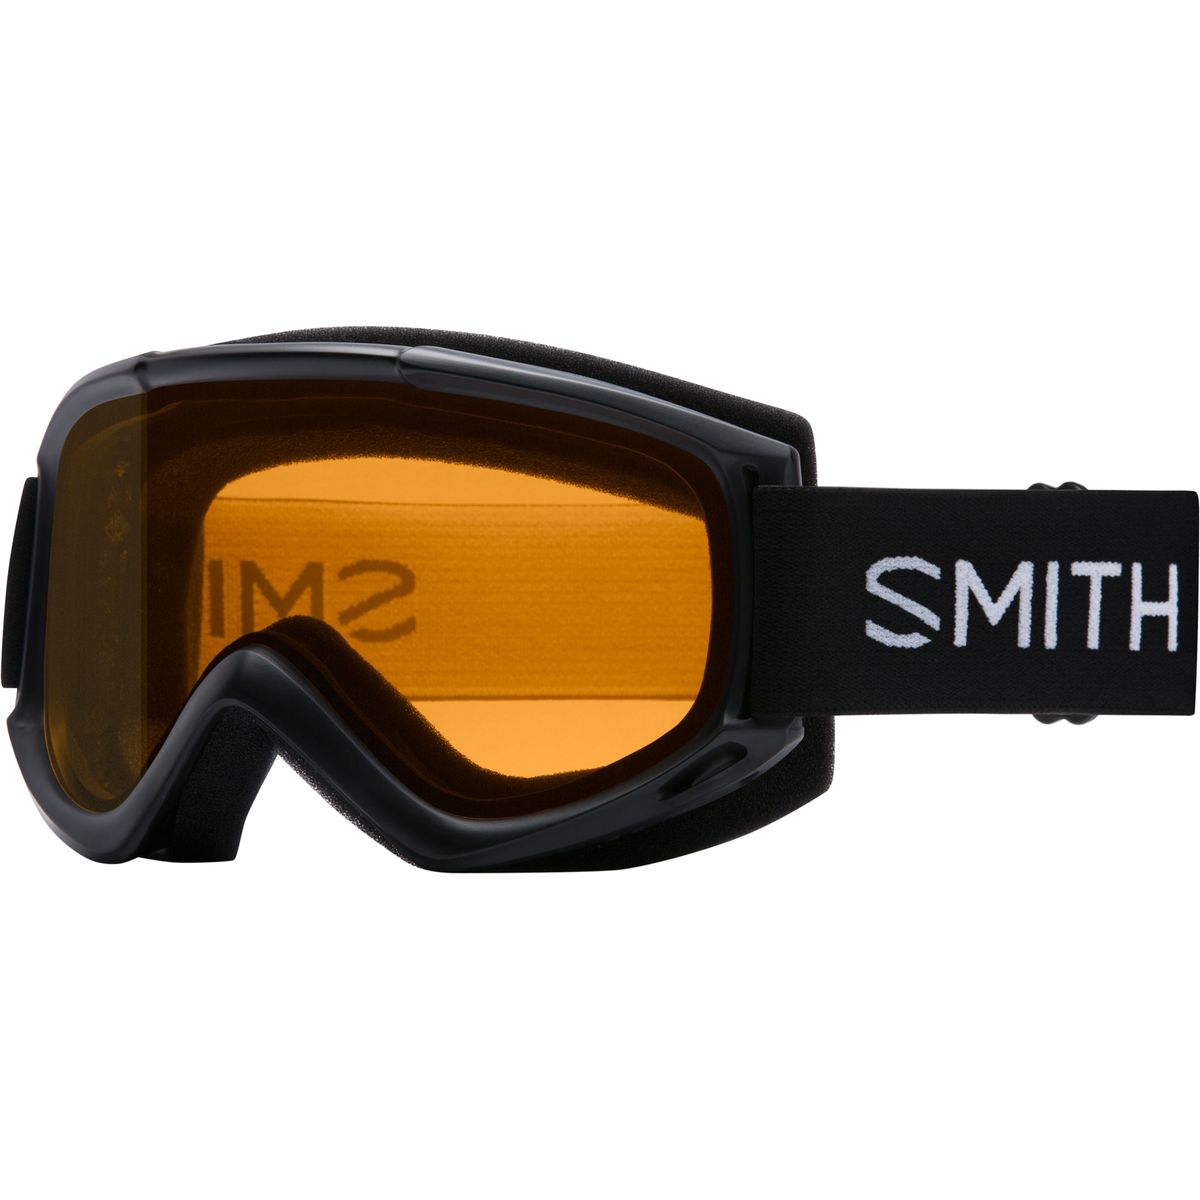 Smith Cascade Classic Goggles